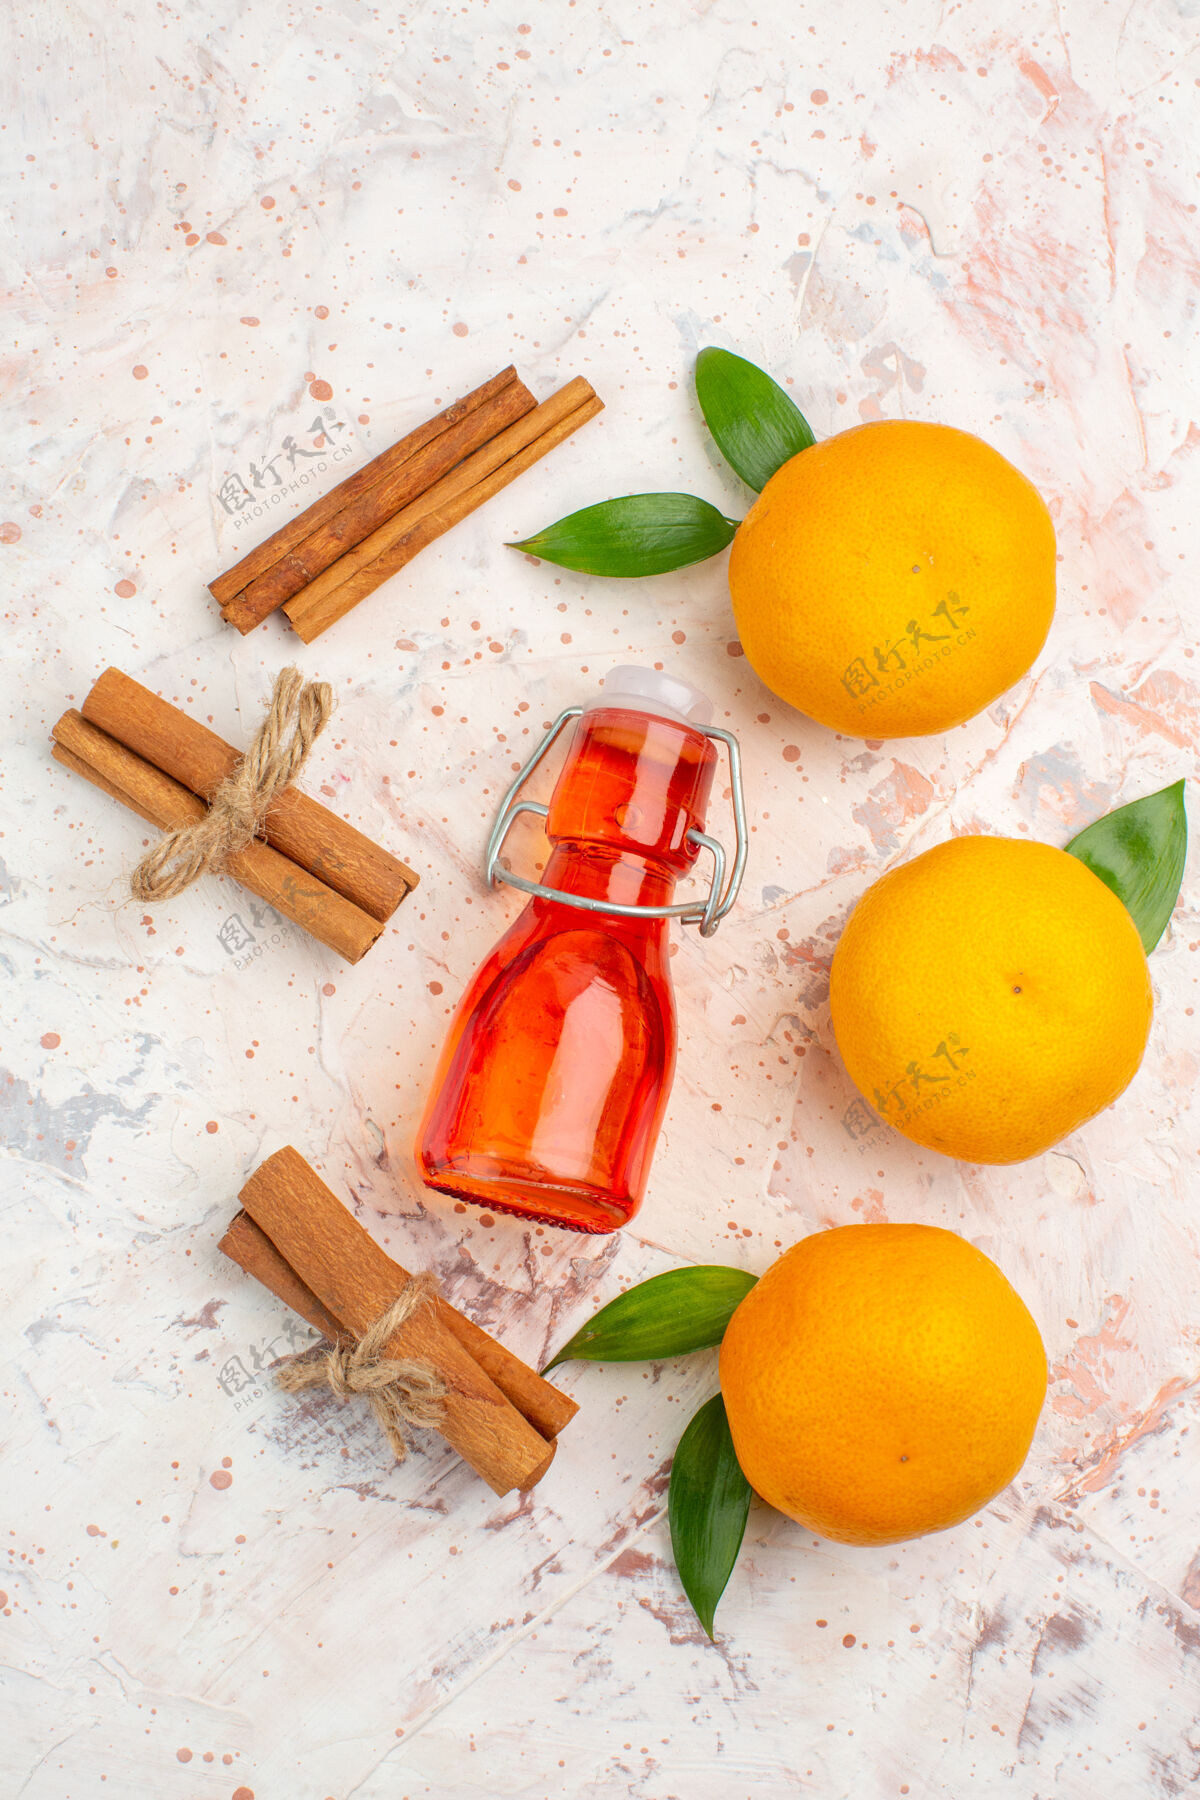 果汁顶视图新鲜柑桔肉桂棒瓶在明亮的表面新鲜的柑橘视野新鲜